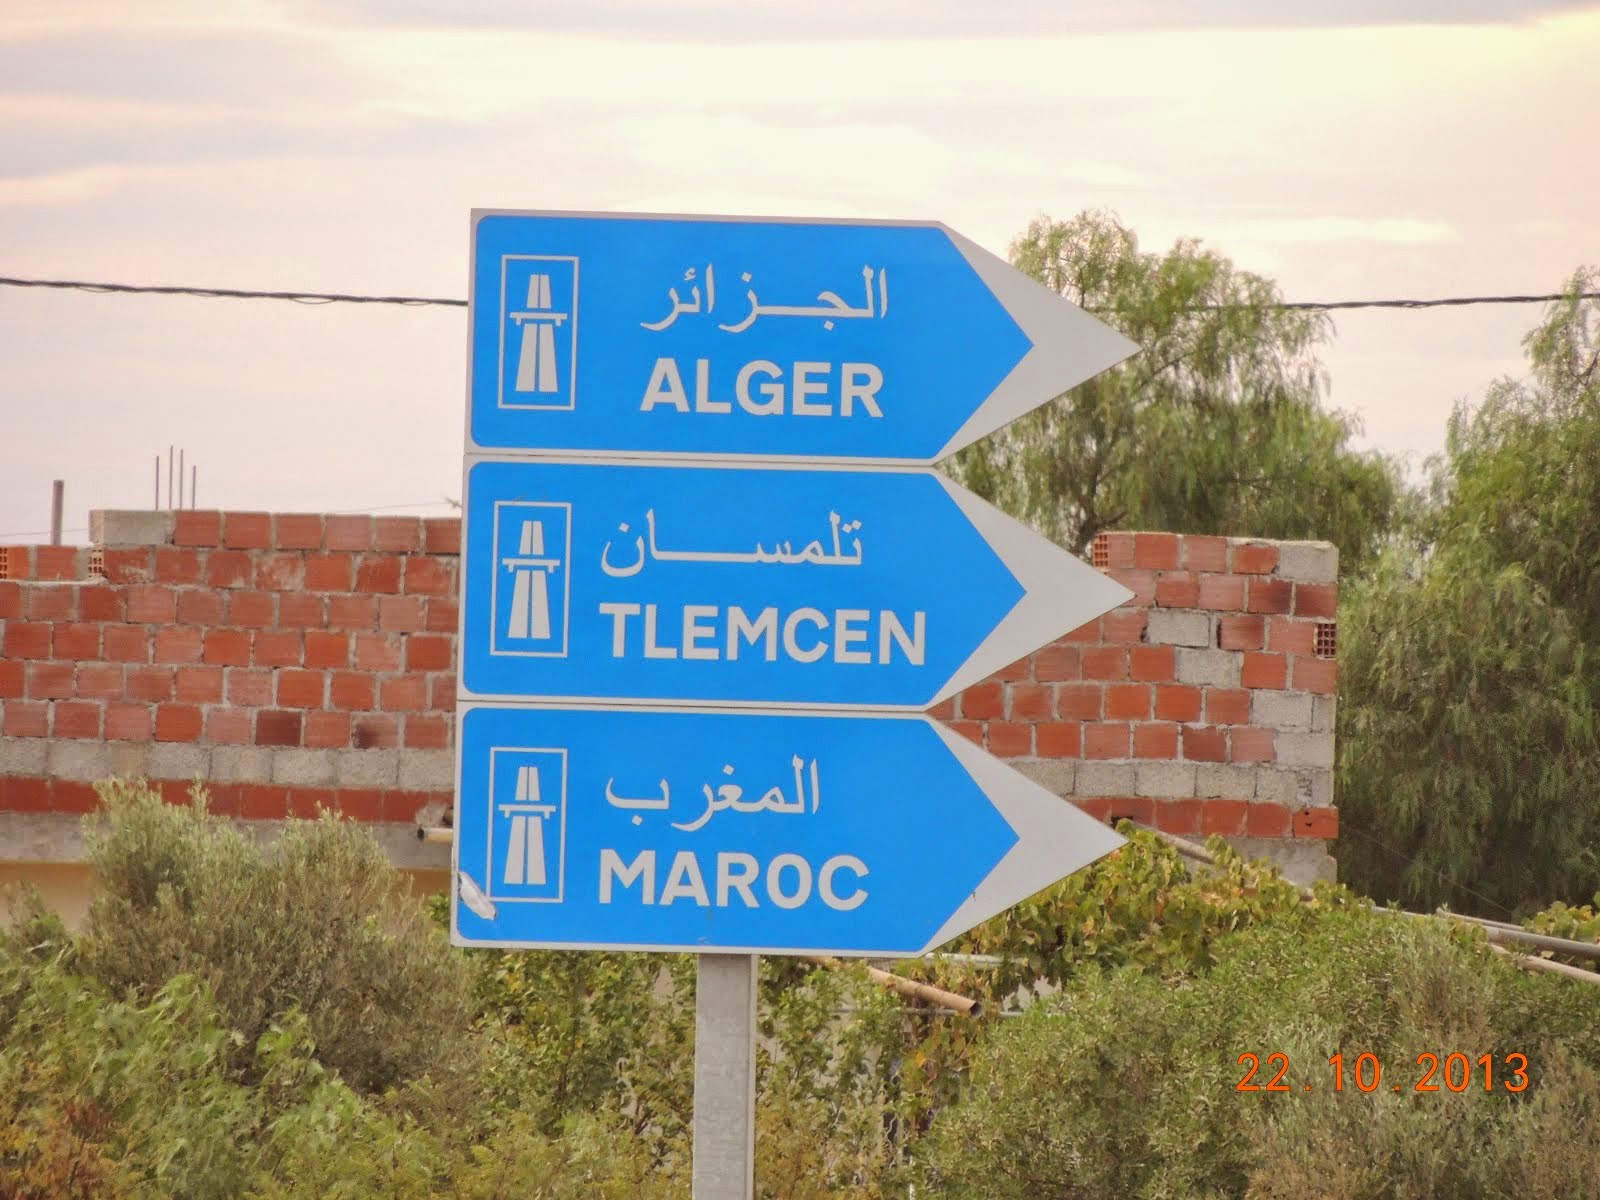 La premiére autoroute en Algérie